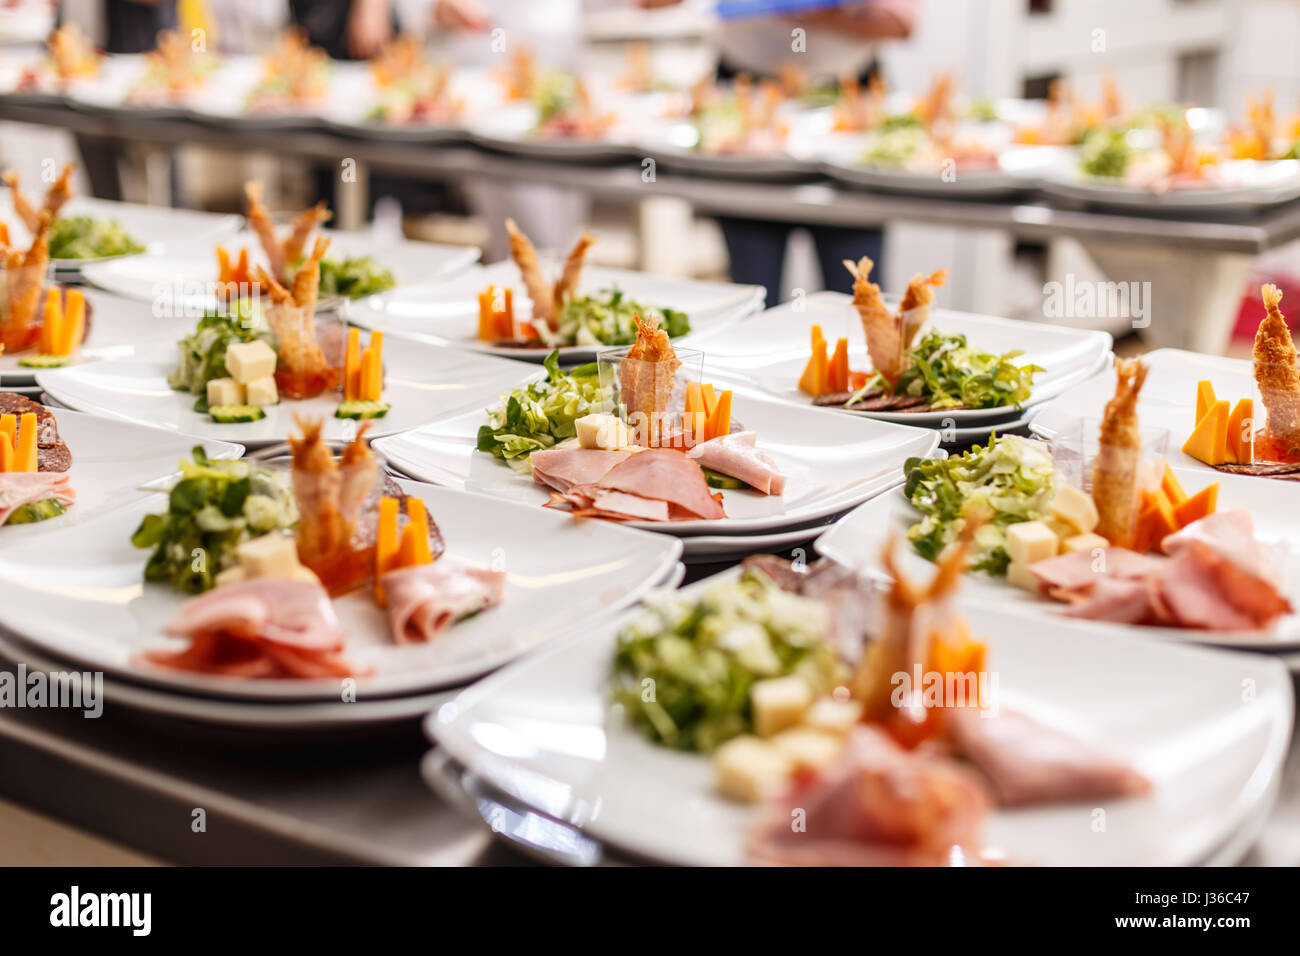 Sacco di antipasti e piatti di cibo in un ristorante di cucina. Foto Stock